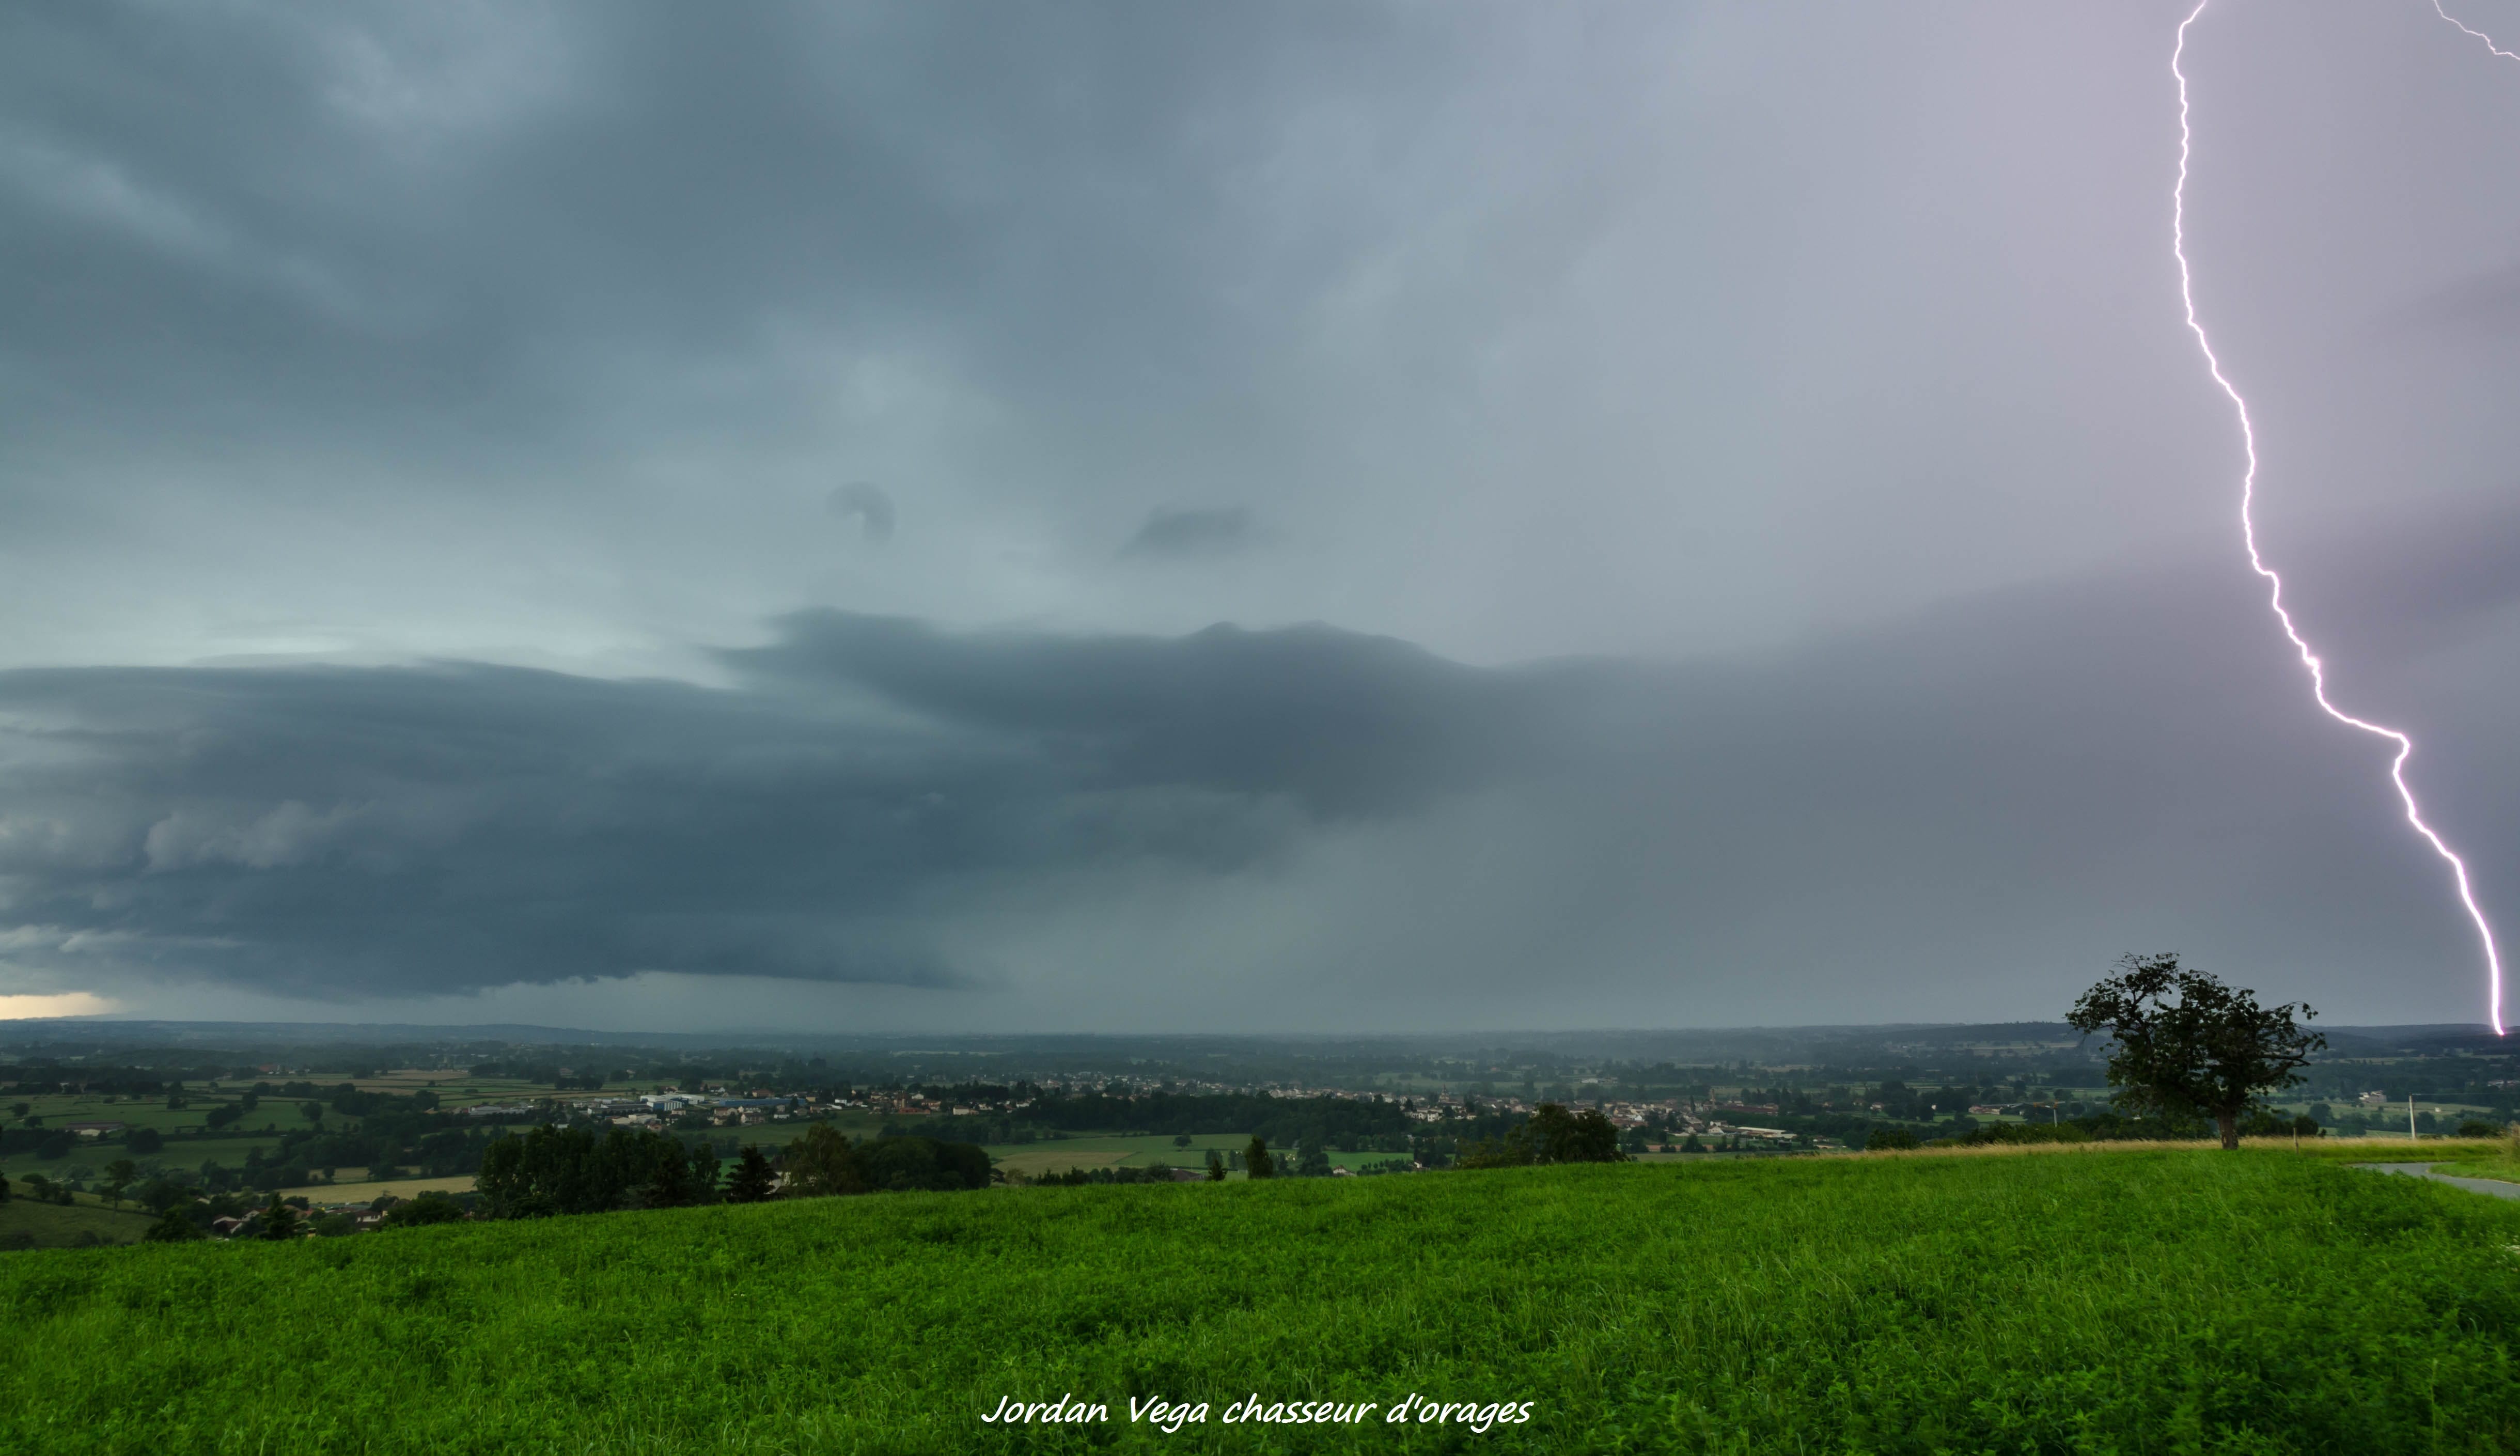 Nombreux orages souvent de nature supercellulaire sur la Loire cette après-midi, avec des coups de foudre peu nombreux mais puissant - 10/06/2018 18:20 - Jordan Vega